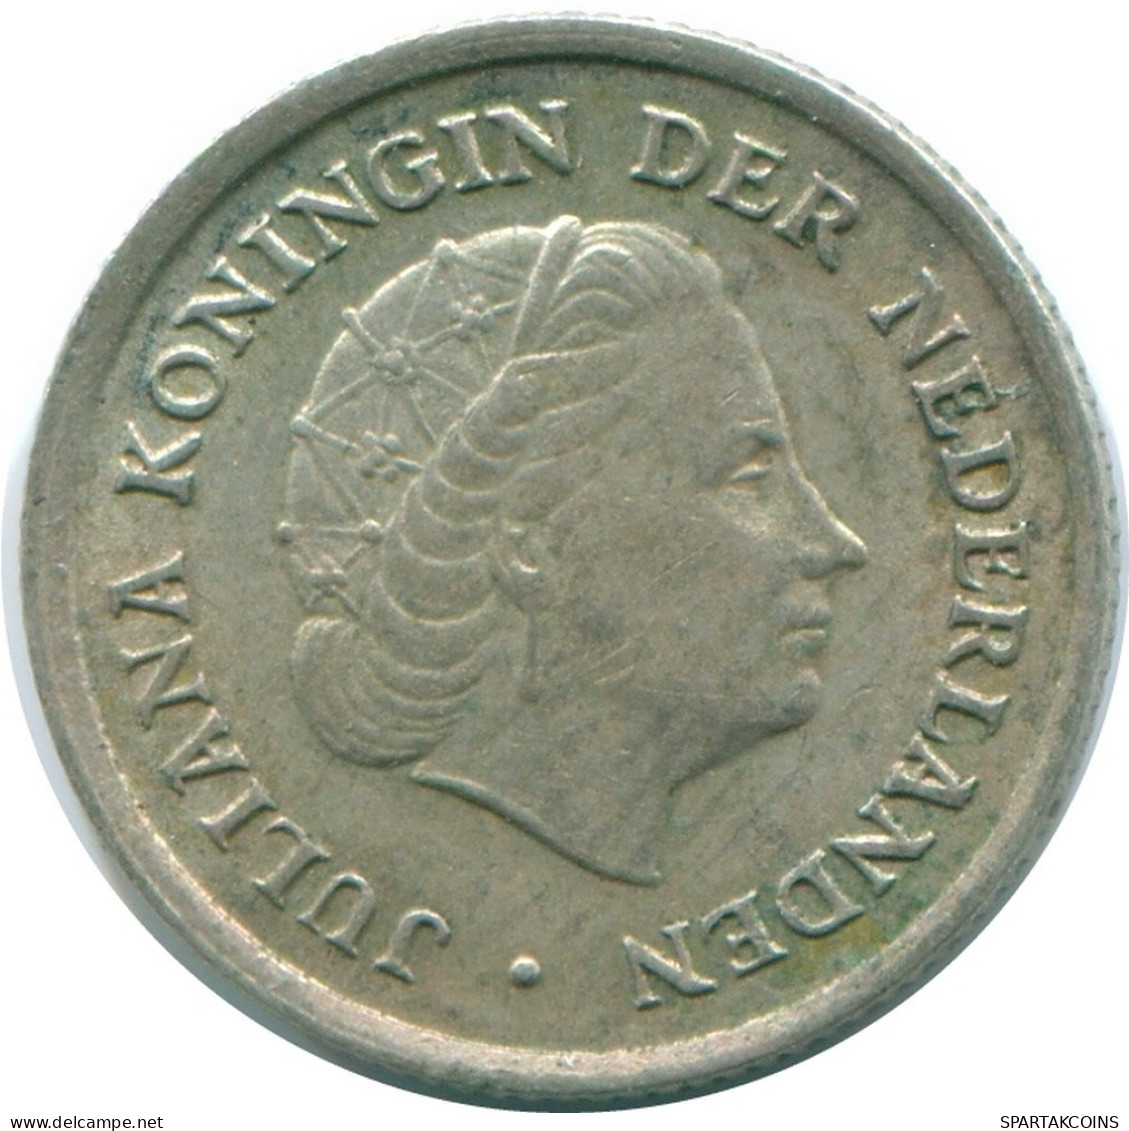 1/10 GULDEN 1970 NIEDERLÄNDISCHE ANTILLEN SILBER Koloniale Münze #NL13060.3.D.A - Antilles Néerlandaises